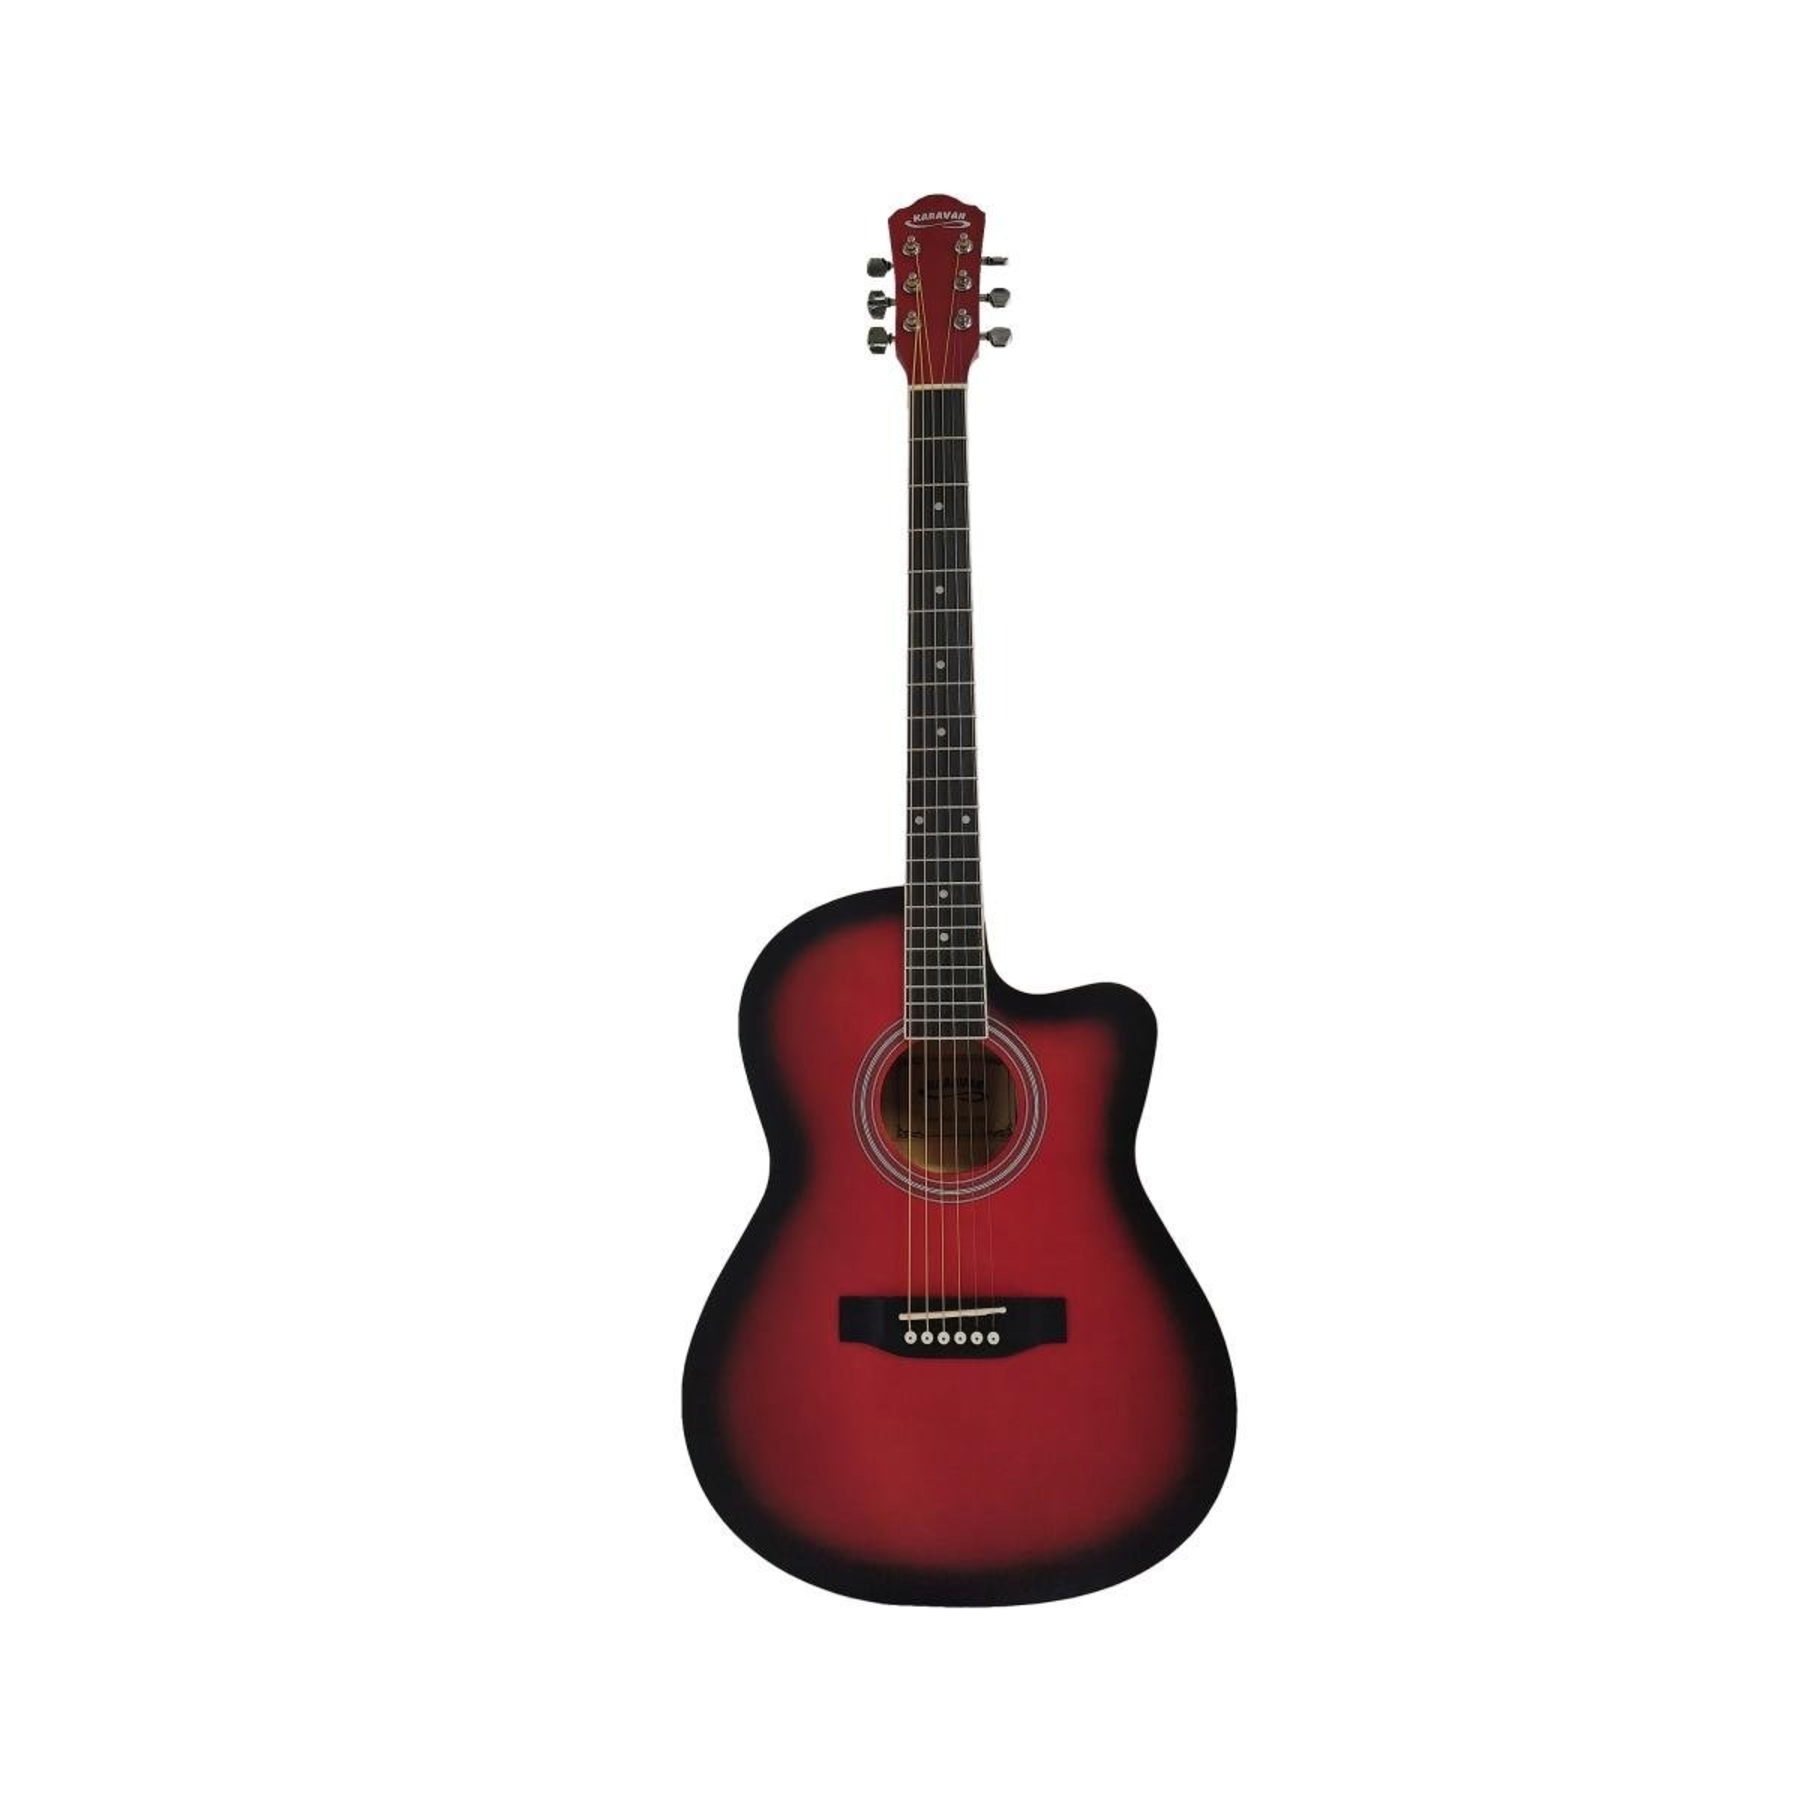 Акустические гитары Caravan K-3911 RD гитара акустическая дерево 97см с вырезом